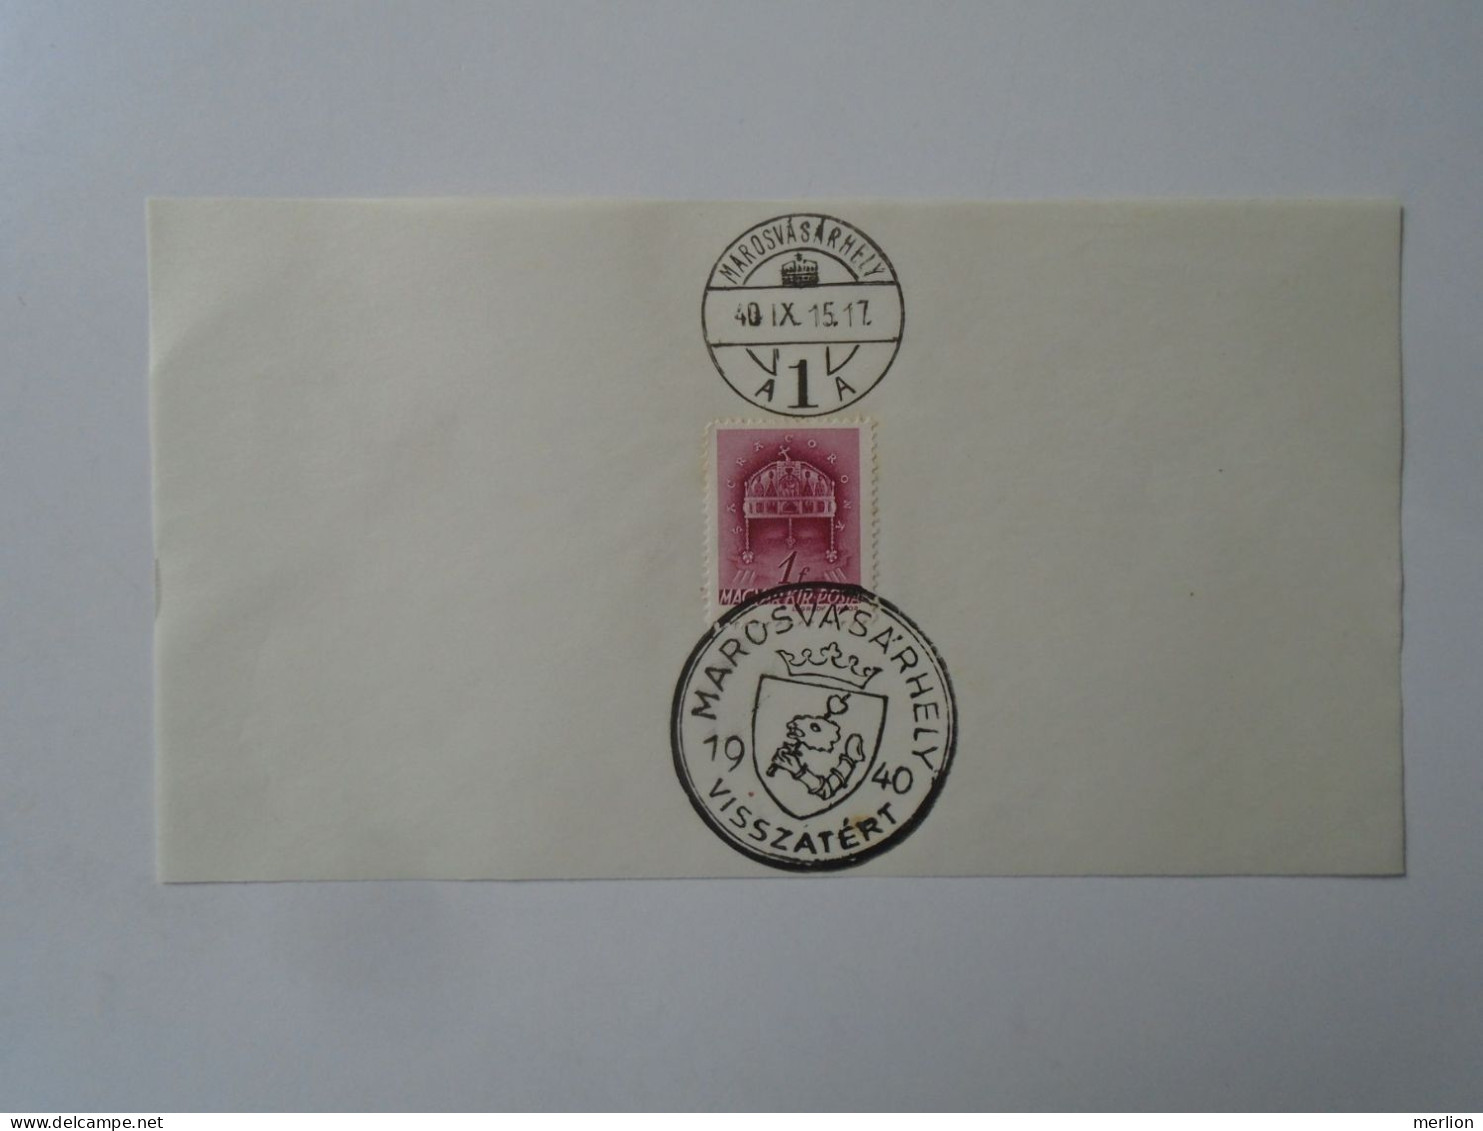 ZA451.54  Hungary -Marosvásárhely  Visszatért -Commemorative Postmark 1940 - Poststempel (Marcophilie)